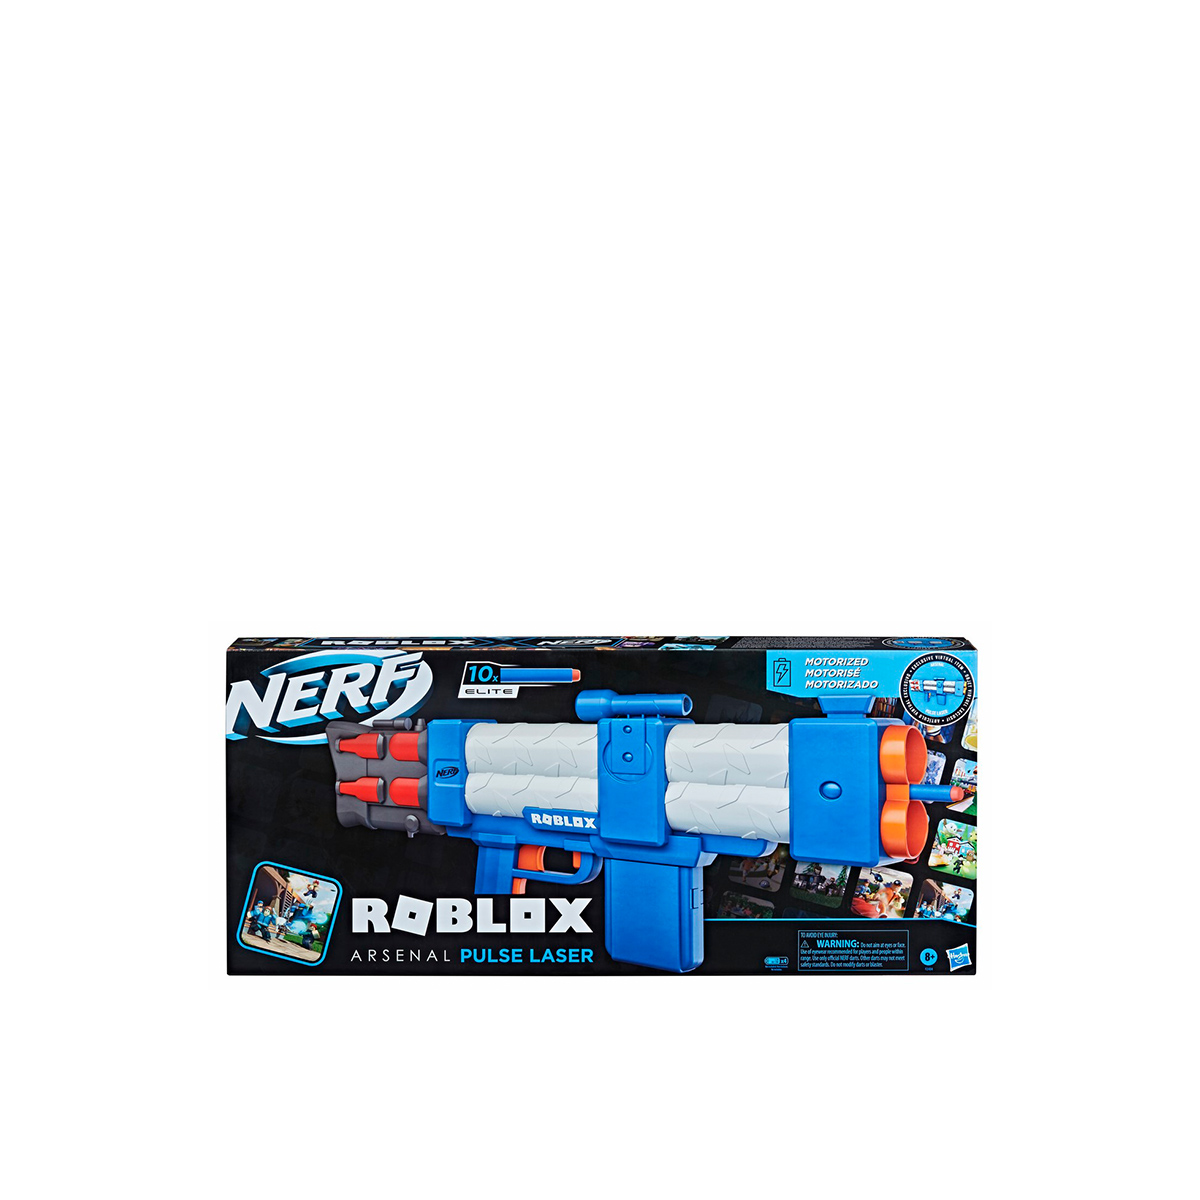 NERF Roblox Arsenal Pulse Laser Motorized Dart Blaster Gun for